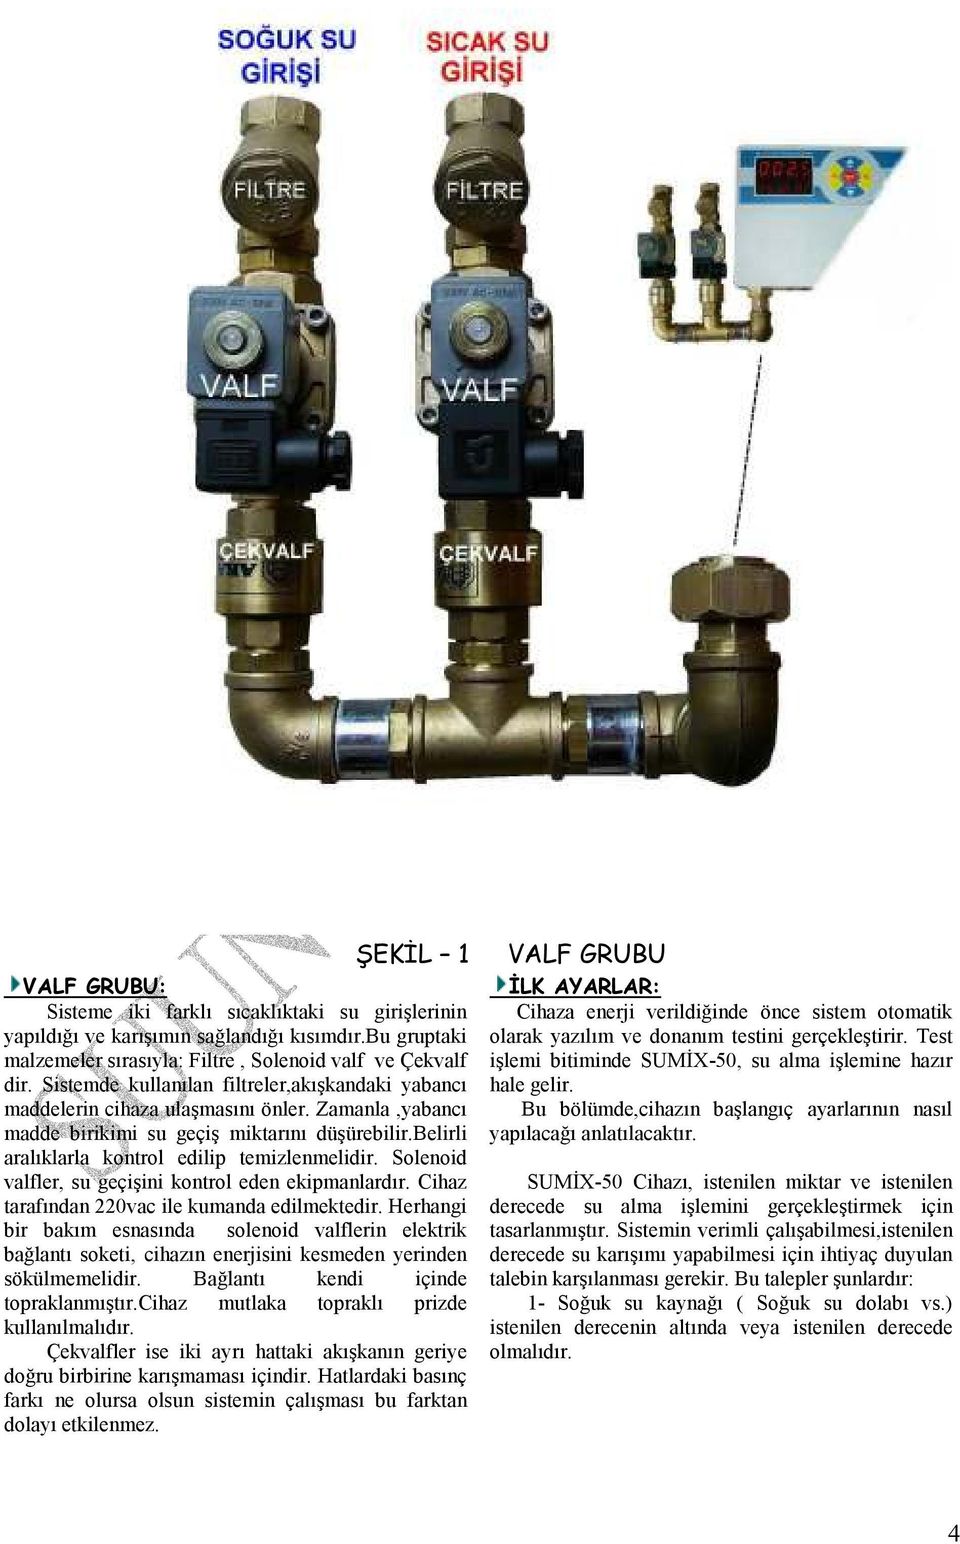 Solenoid valfler, su geçişini kontrol eden ekipmanlardır. Cihaz tarafından 220vac ile kumanda edilmektedir.